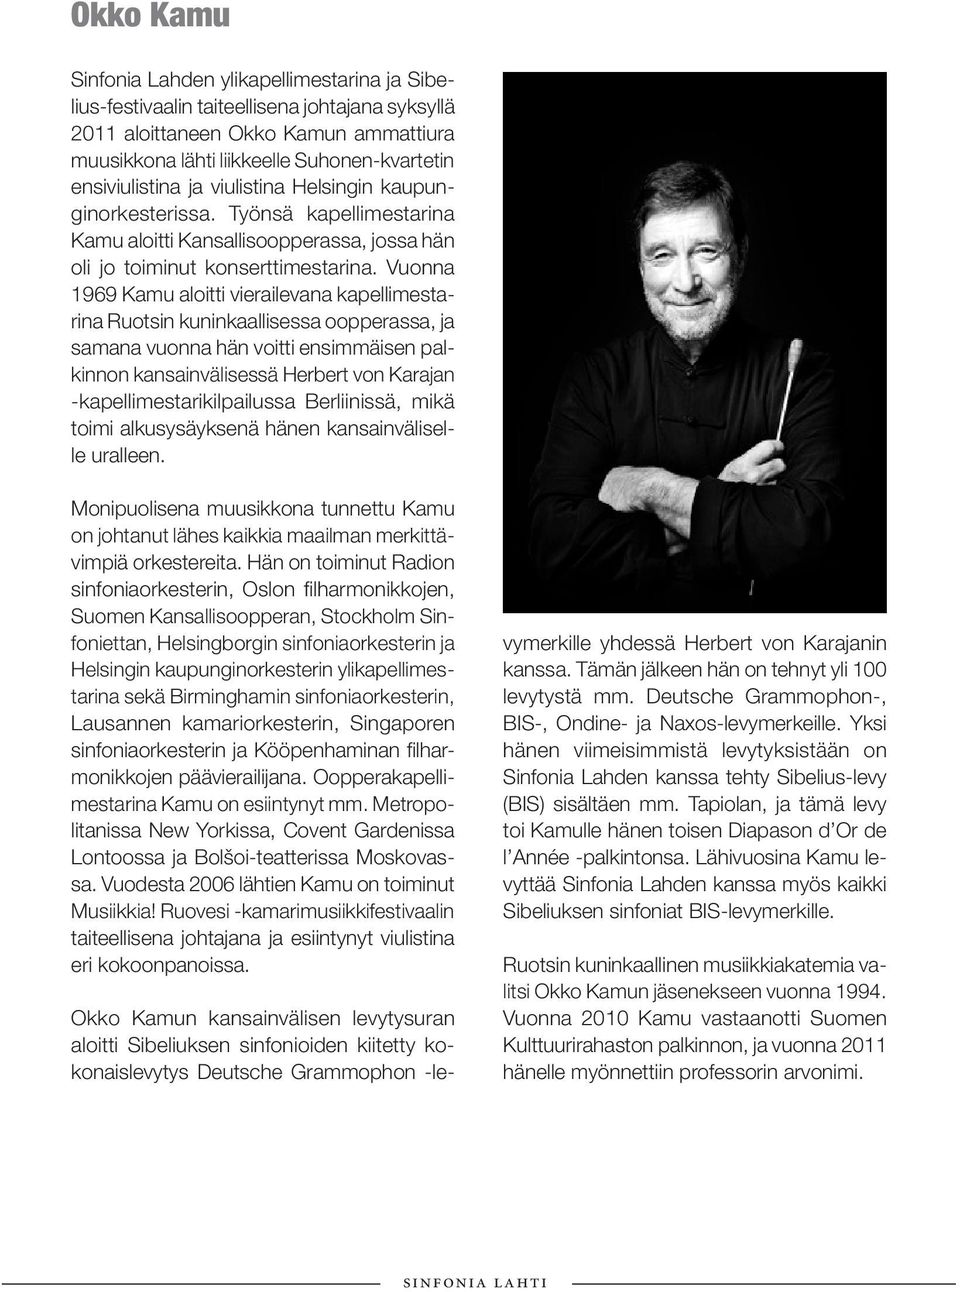 Vuonna 1969 Kamu aloitti vierailevana kapellimestarina Ruotsin kuninkaallisessa oopperassa, ja samana vuonna hän voitti ensimmäisen palkinnon kansainvälisessä Herbert von Karajan